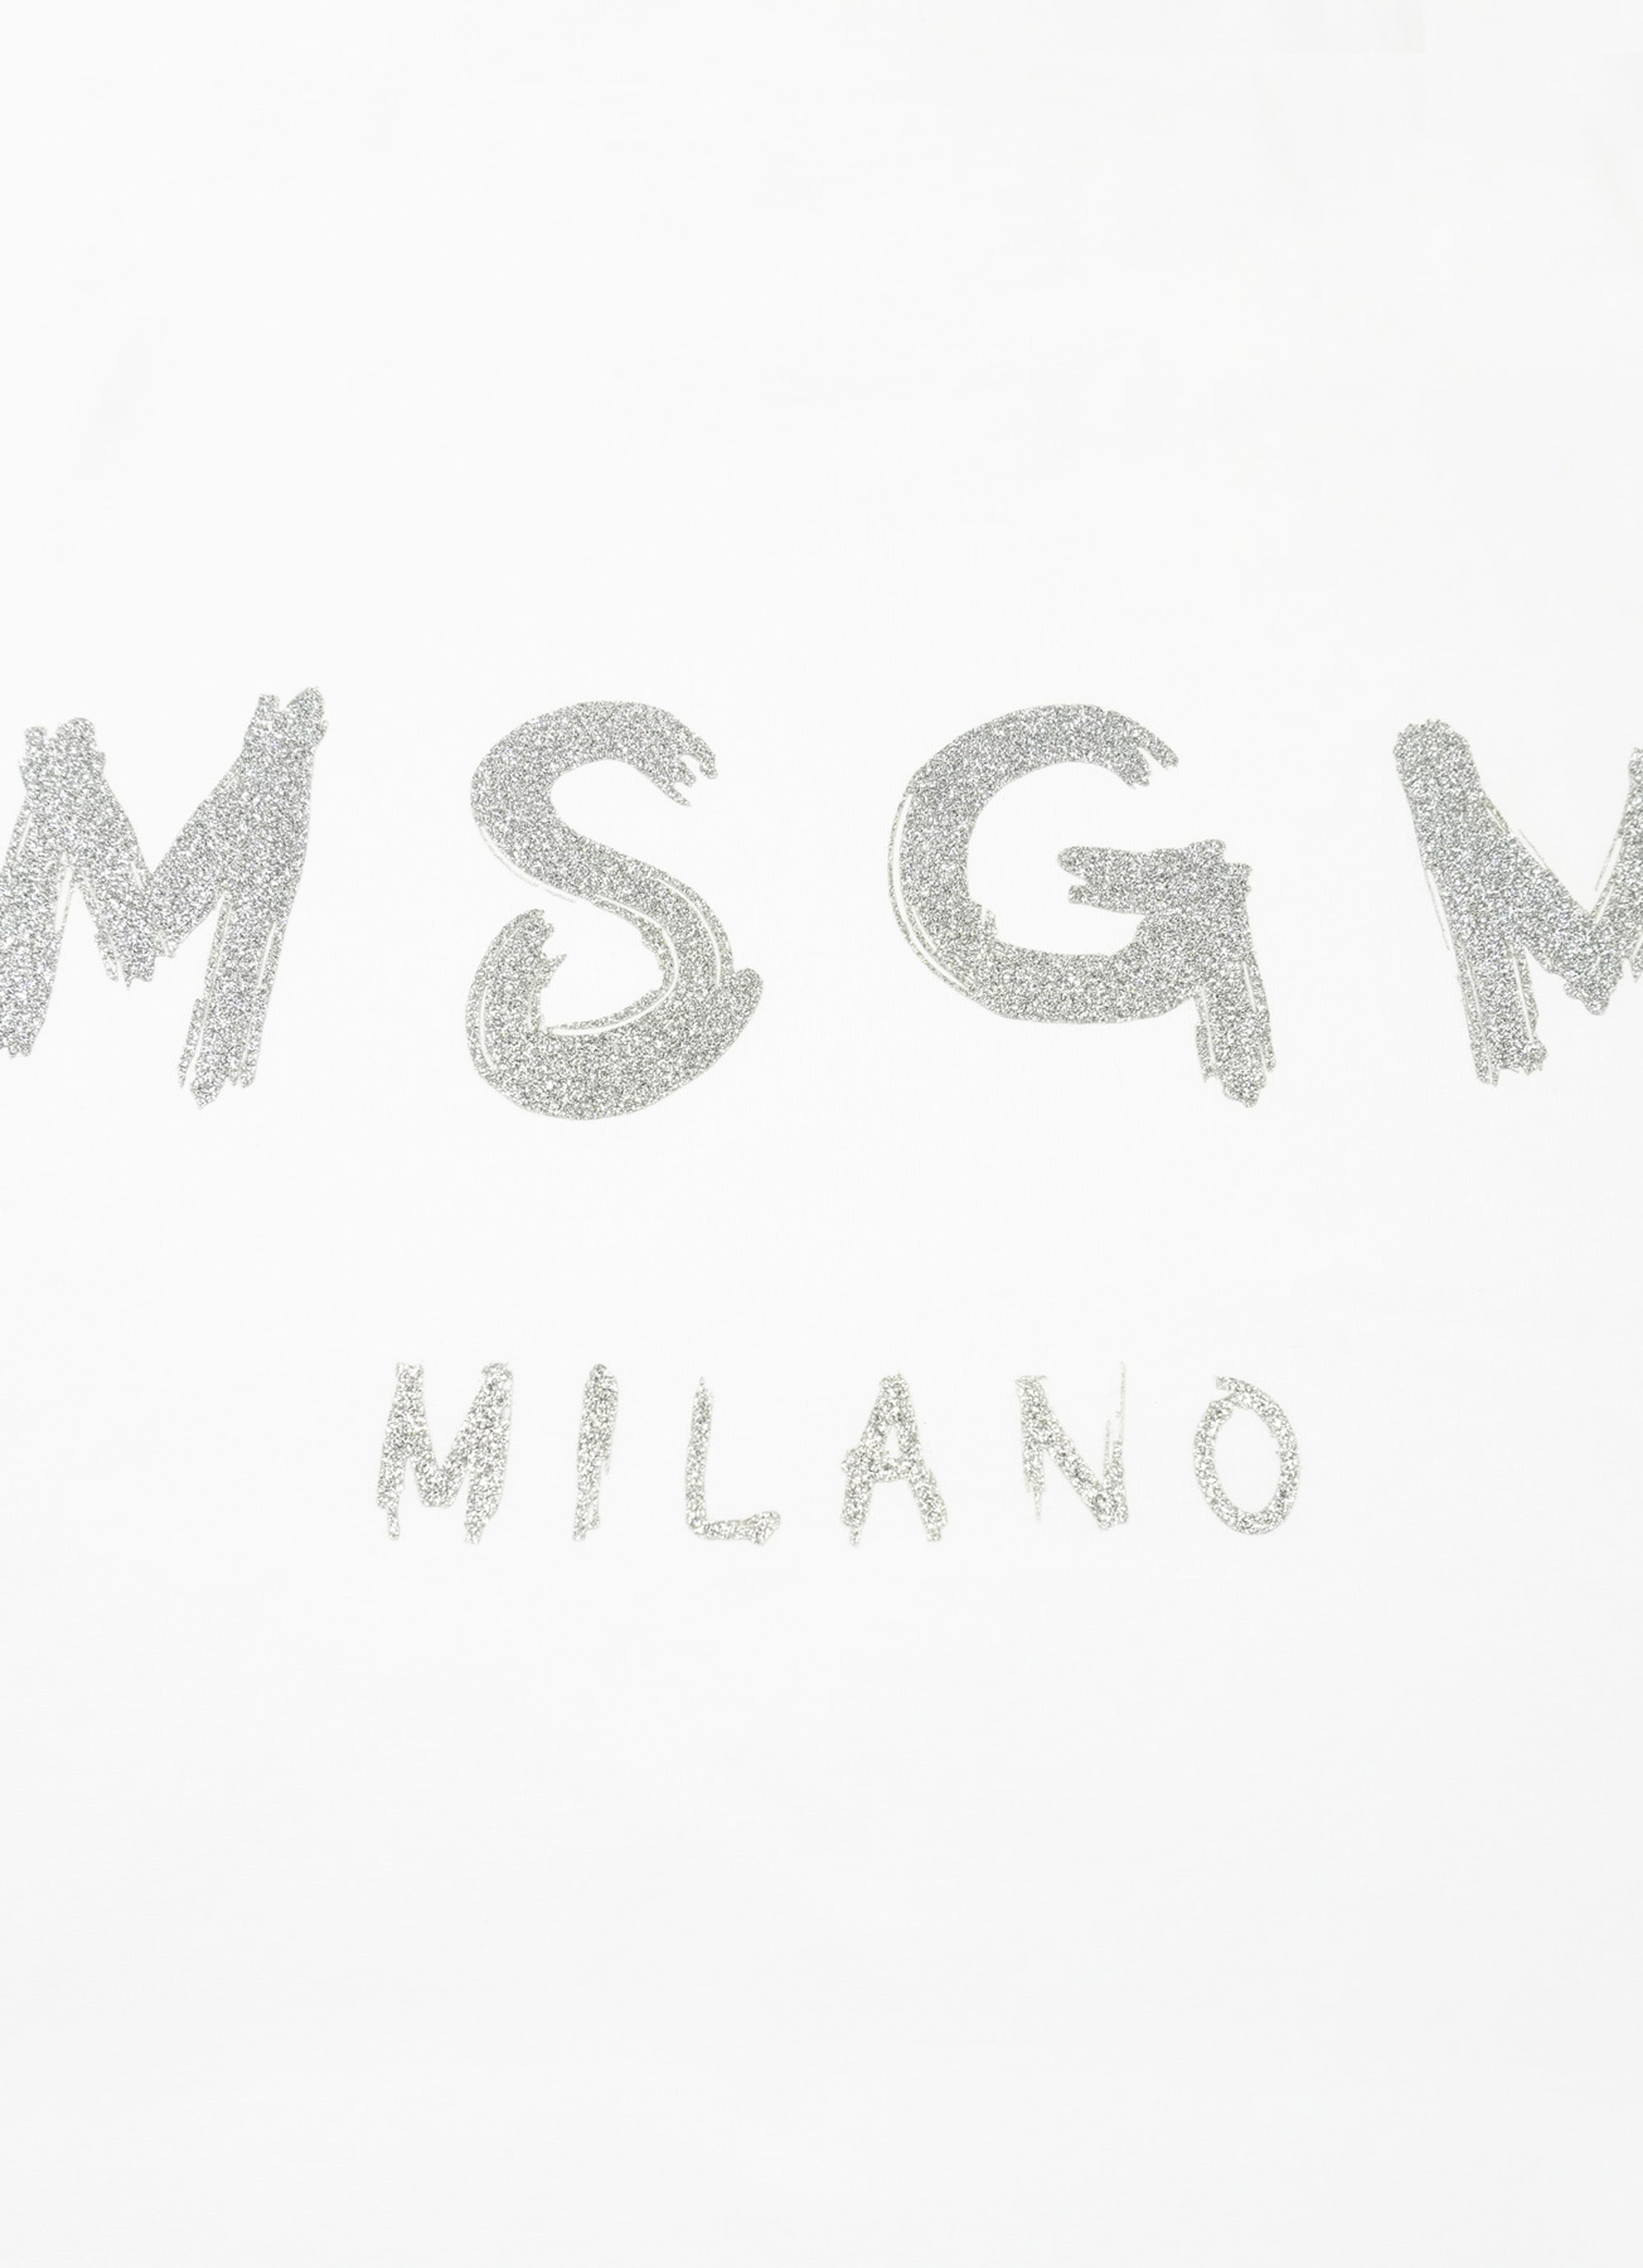 【NEW】MSGM ブラッシュロゴTシャツ【Japan Exclusive/GLITTER PRINT】 詳細画像 ホワイト×グリッターシルバー 4